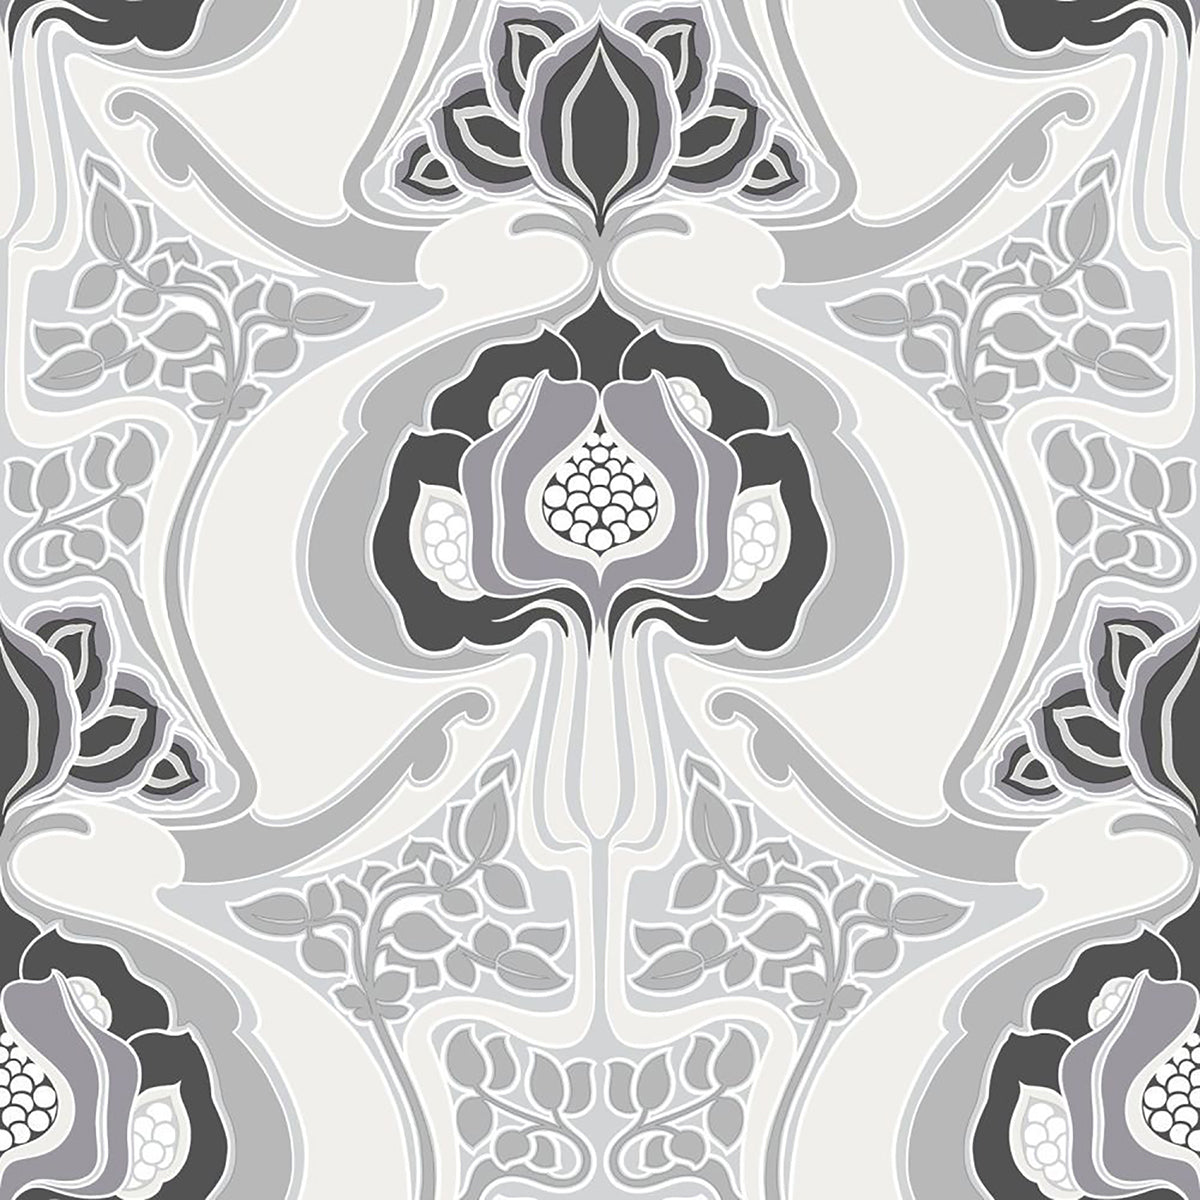 Picture of Joaquin Black Art Nouveau Floral Wallpaper